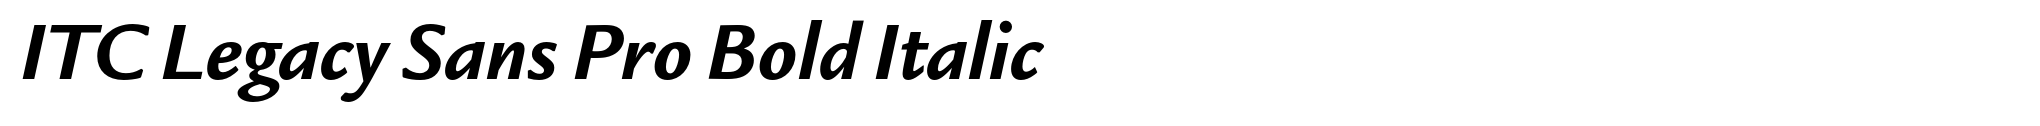 ITC Legacy Sans Pro Bold Italic image